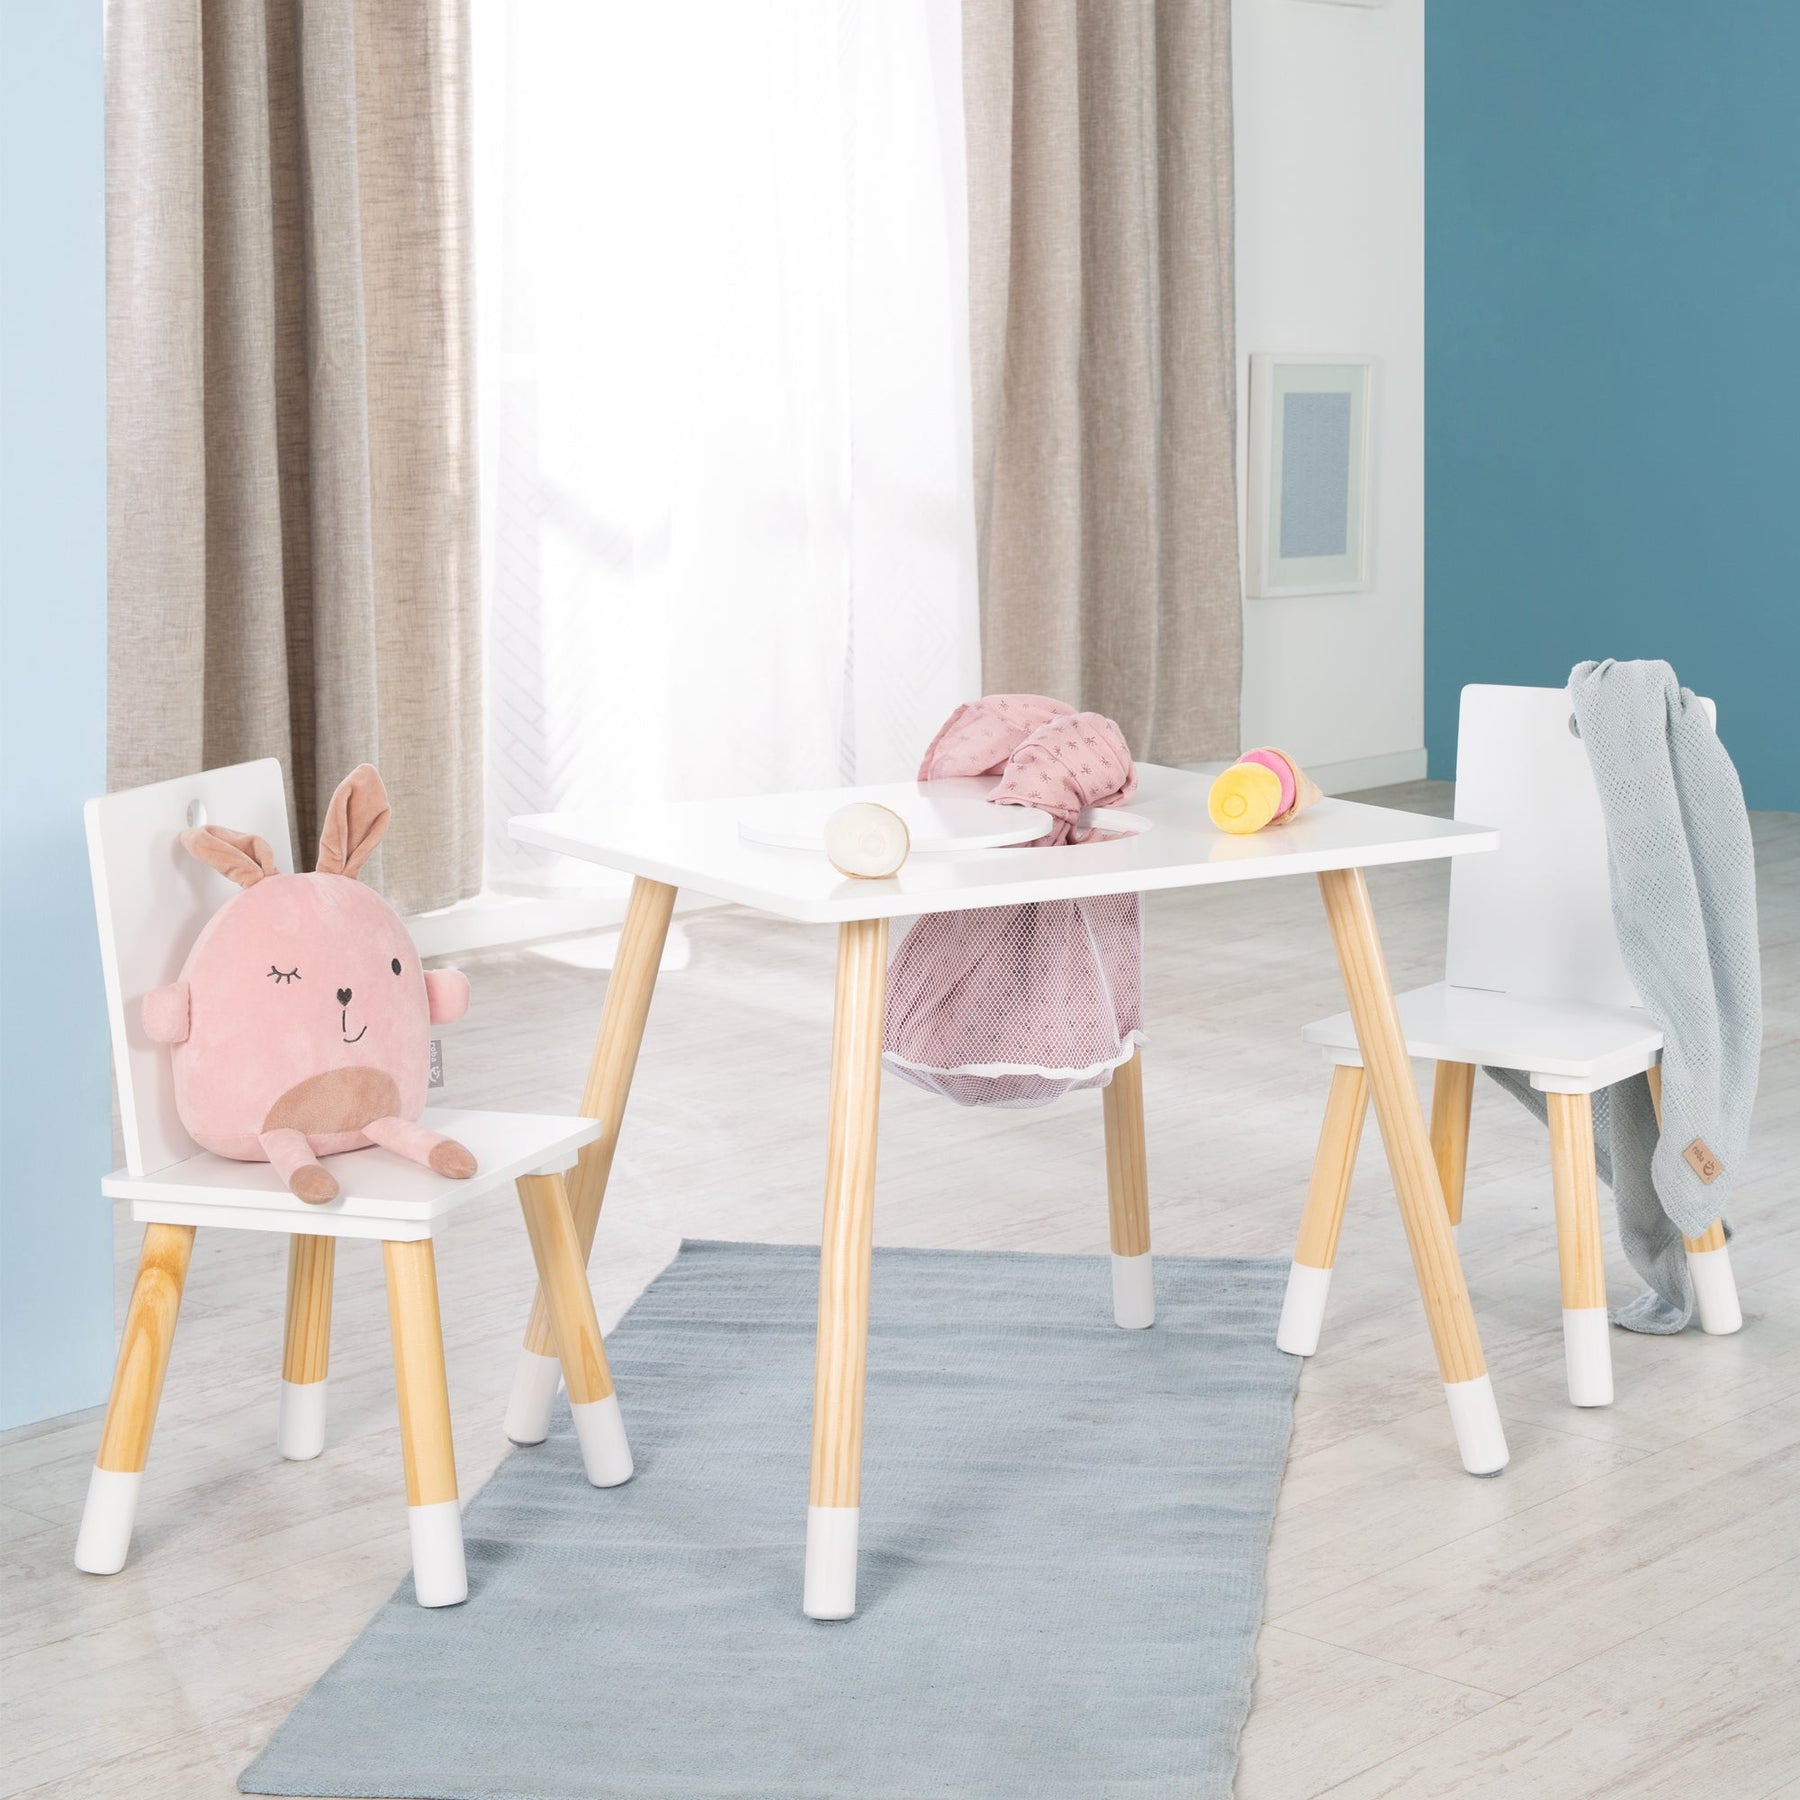 Kindersitzgruppe, Kindermöbel Set Tisch, Holz, Kinderstühlen GmbH 1 aus kidtini & 2 –